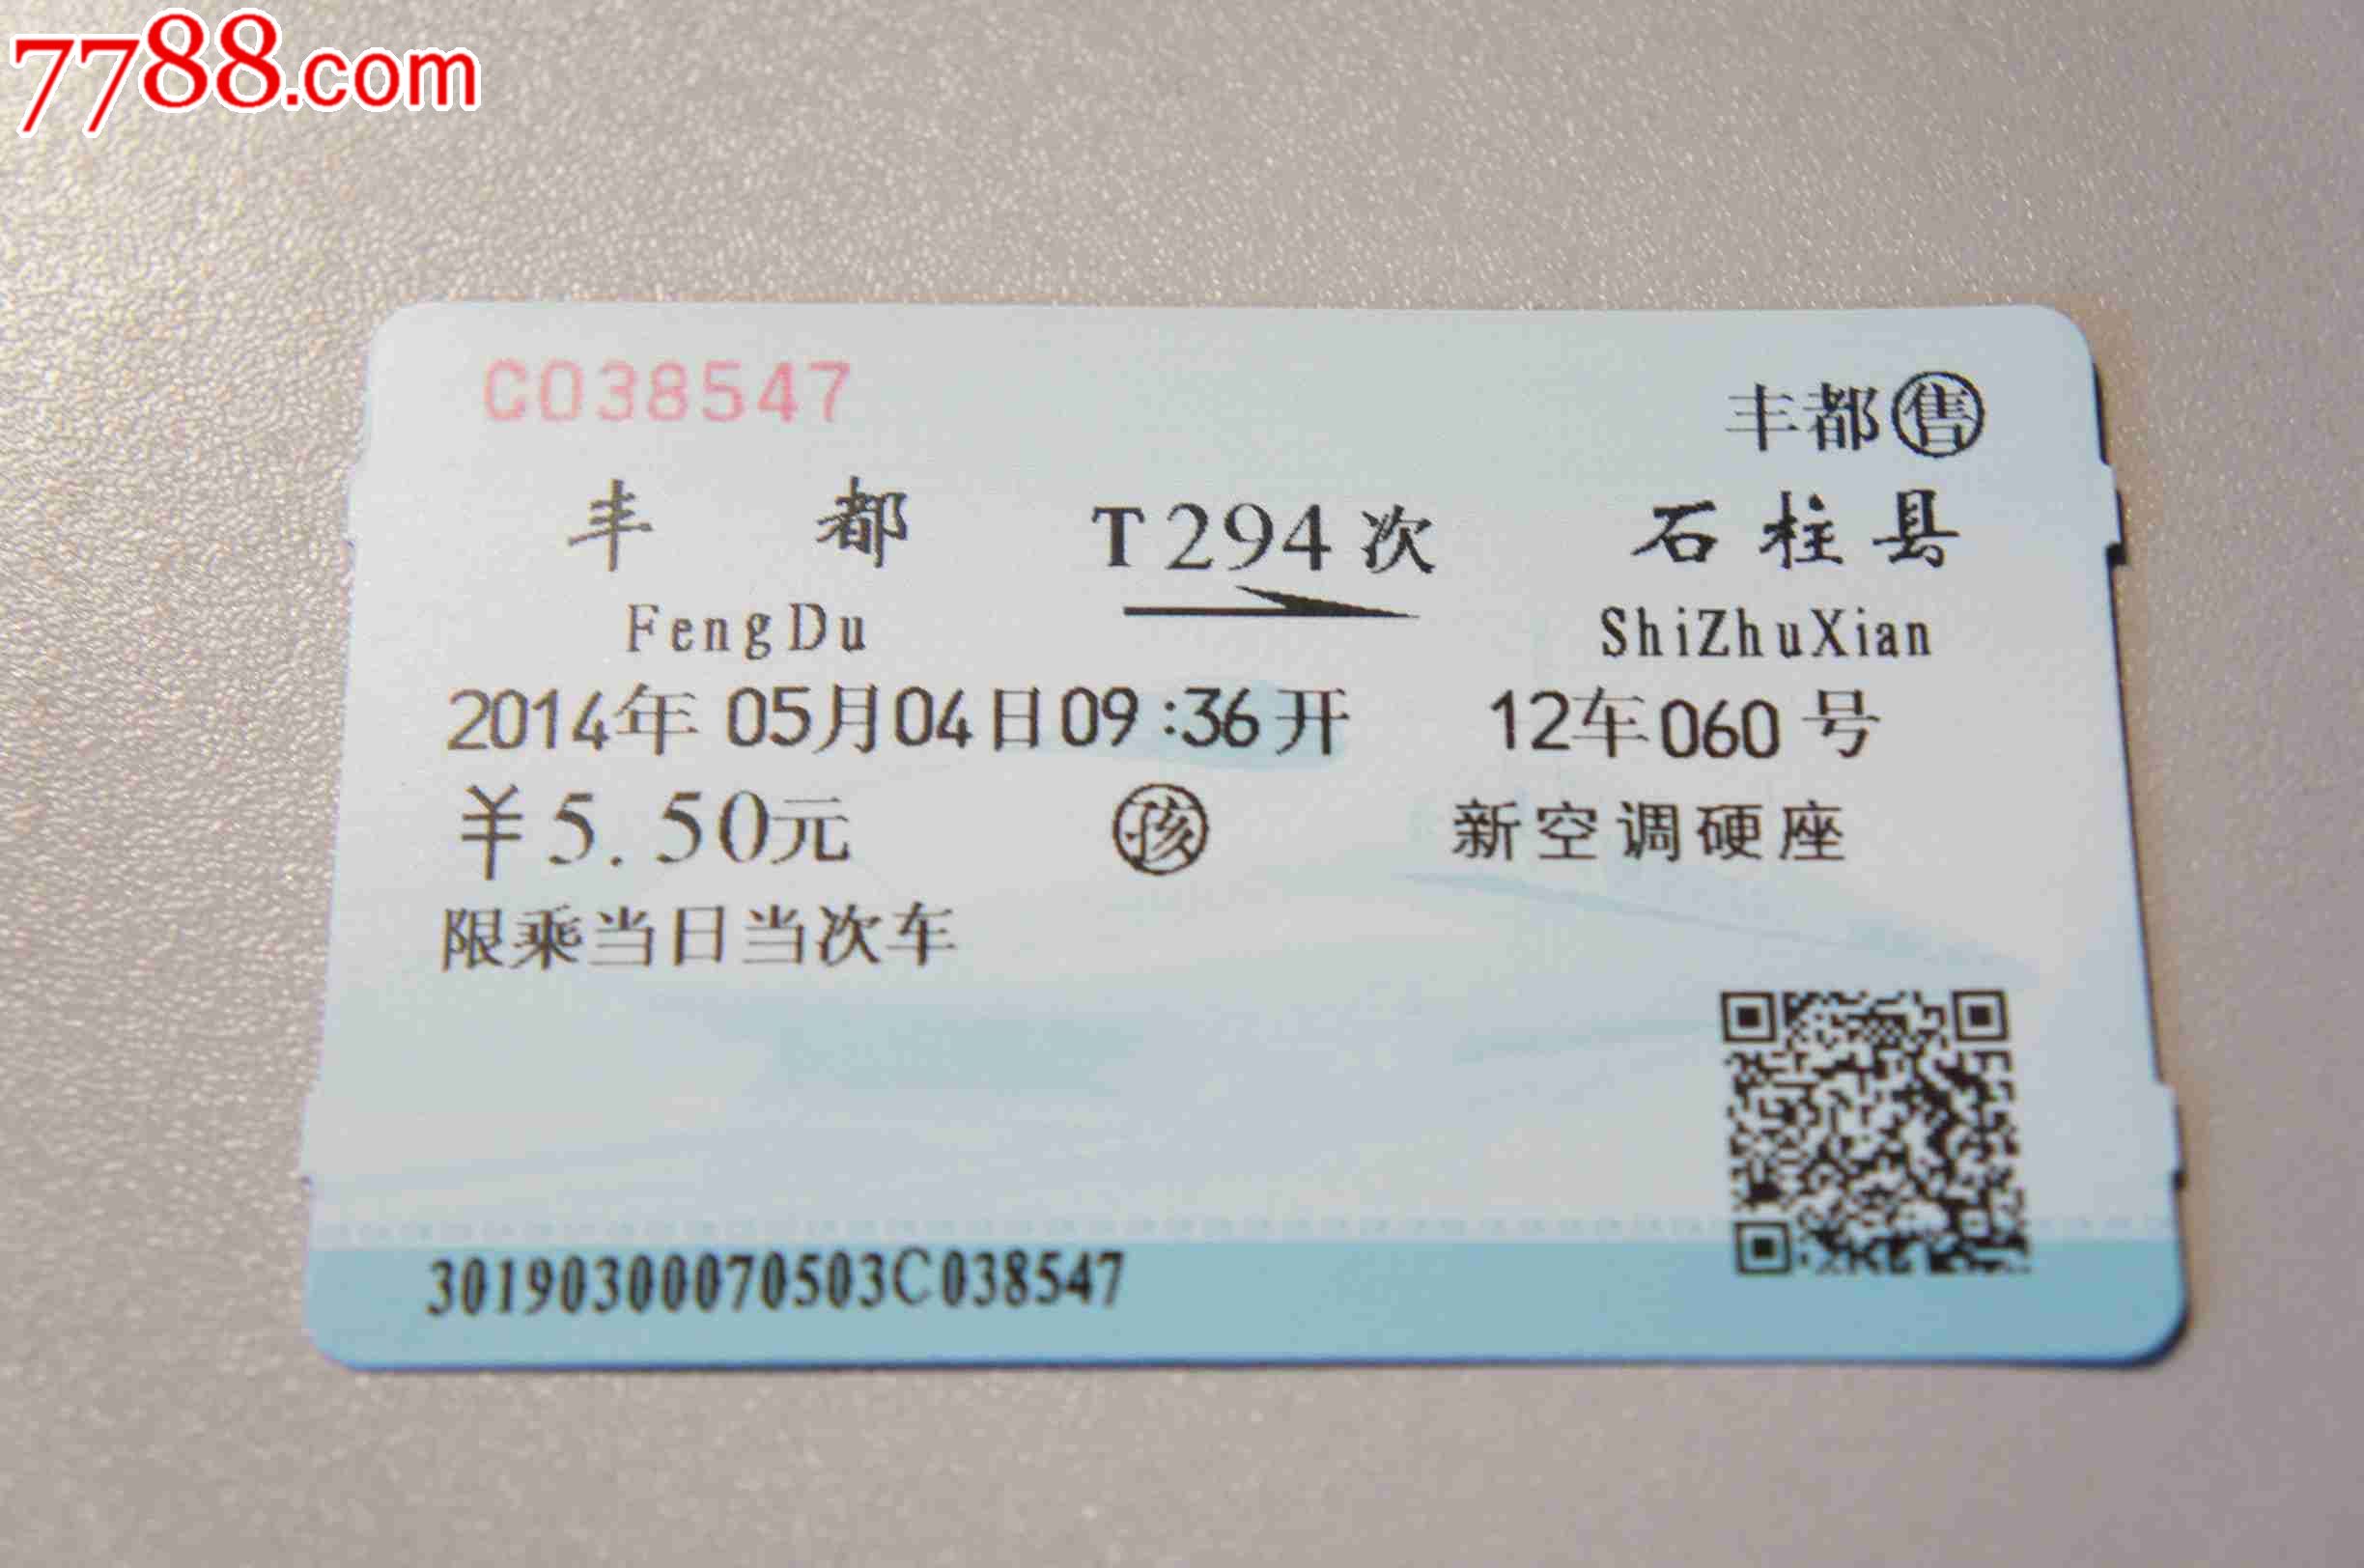 火車票(乘火車的花錢憑證)